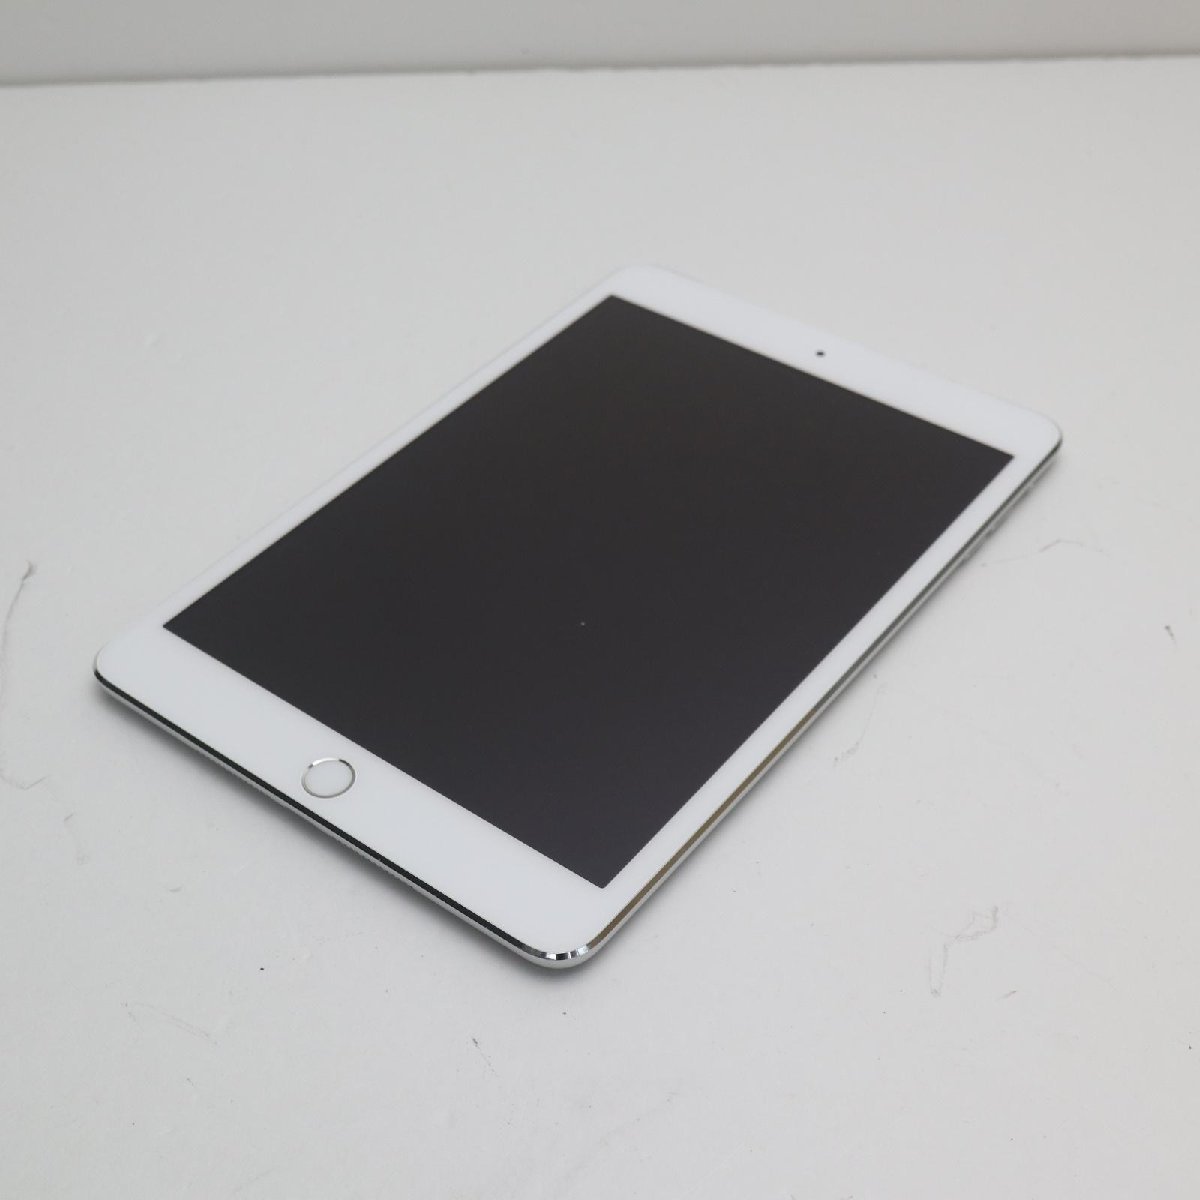 超美品 docomo iPad mini 3 Cellular 16GB シルバー 即日発送 タブレットApple 本体 あすつく 土日祝発送OK